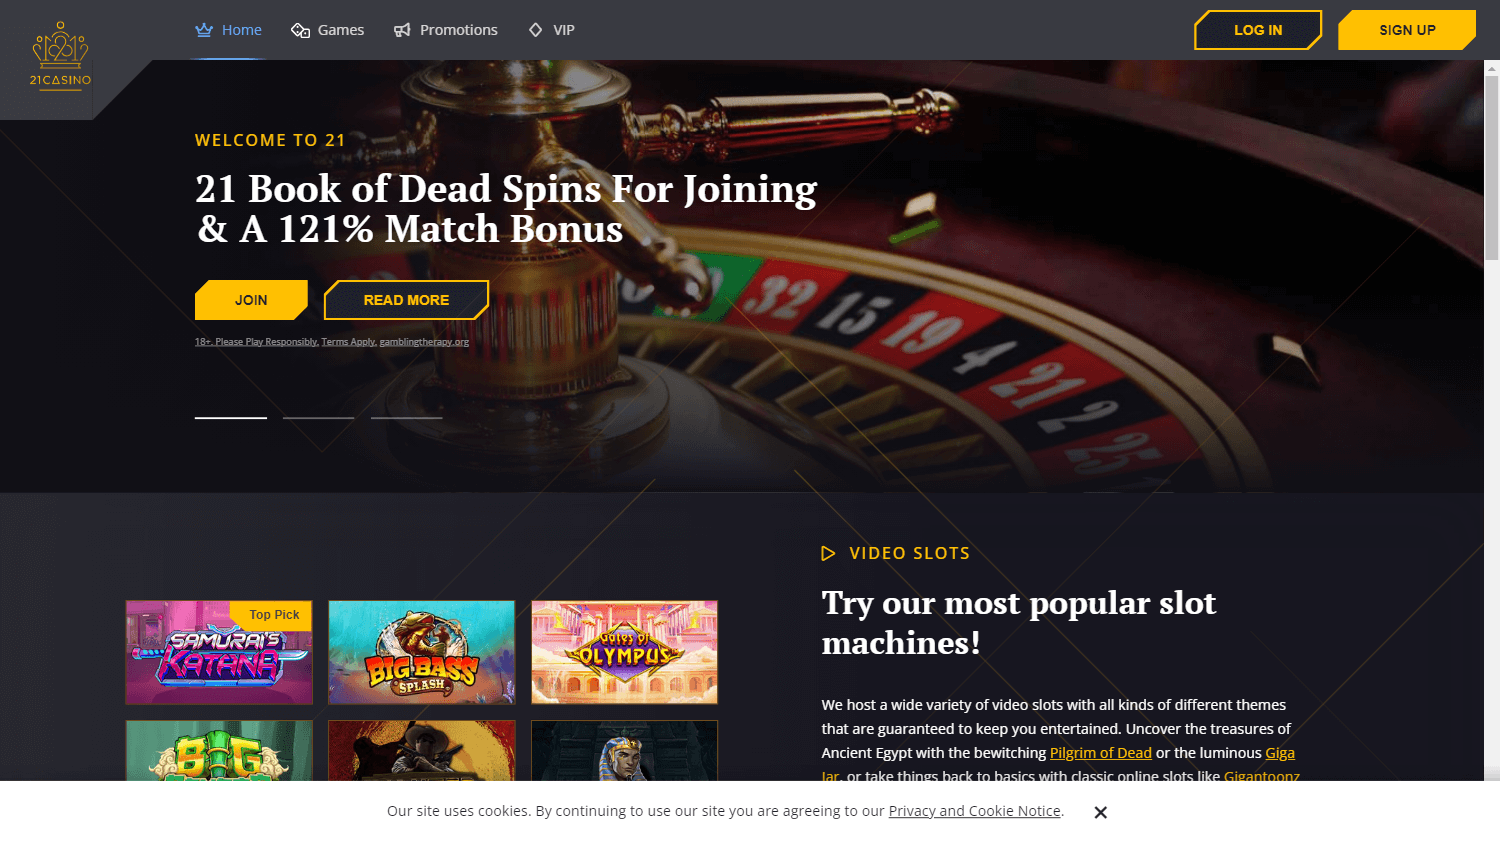 21_casino_homepage_desktop